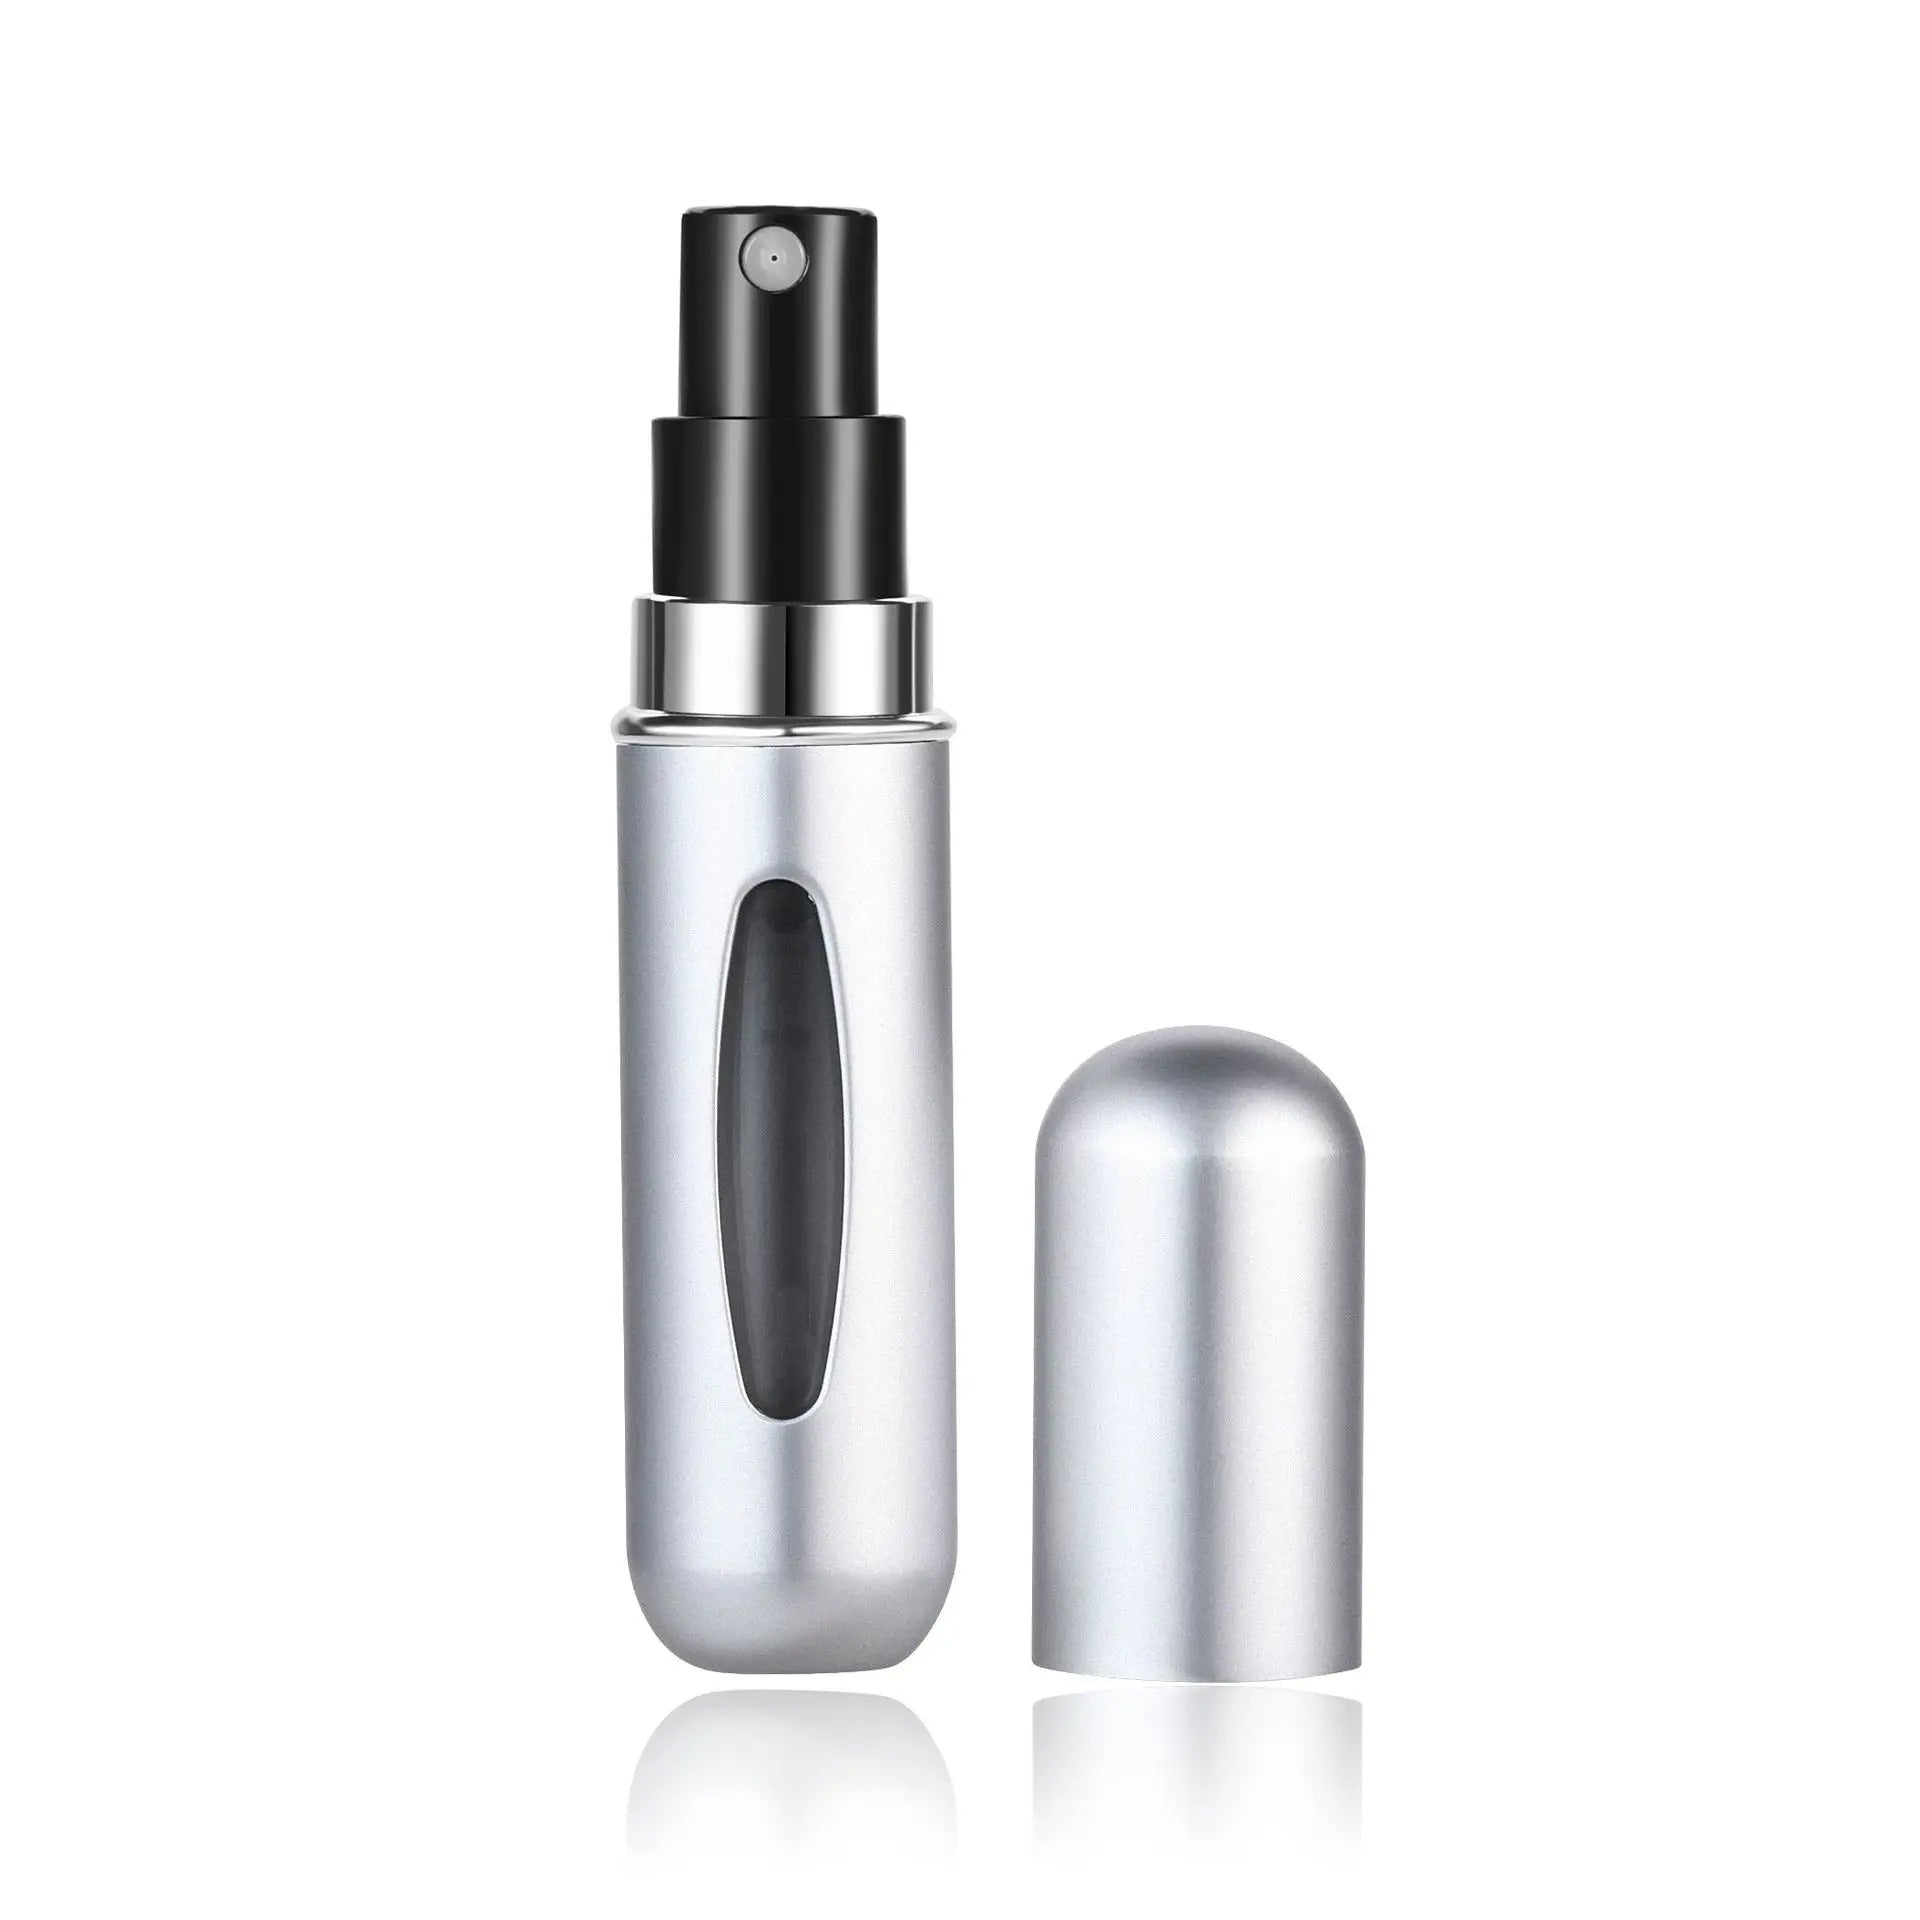 Portable Mini Refillable Perfume Automizer Bottle Zaappy